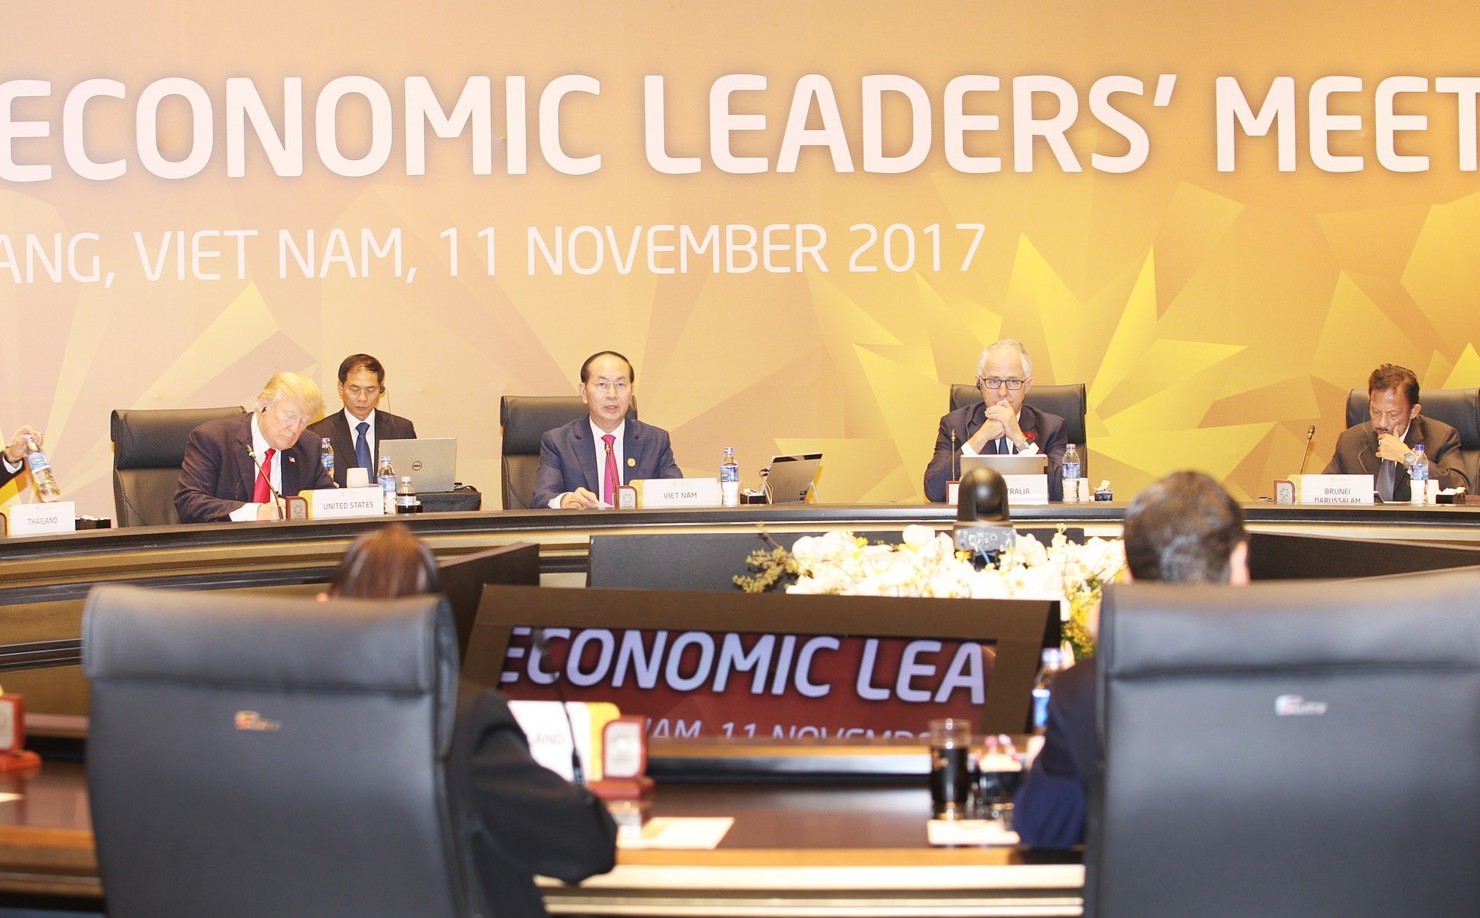 Chủ tịch nước Trần Đại Quang, Chủ tịch Hội nghị Cấp cao APEC lần thứ 25 khai mạc Hội nghị các Nhà lãnh đạo Kinh tế APEC lần thứ 25. Nguồn: VGP